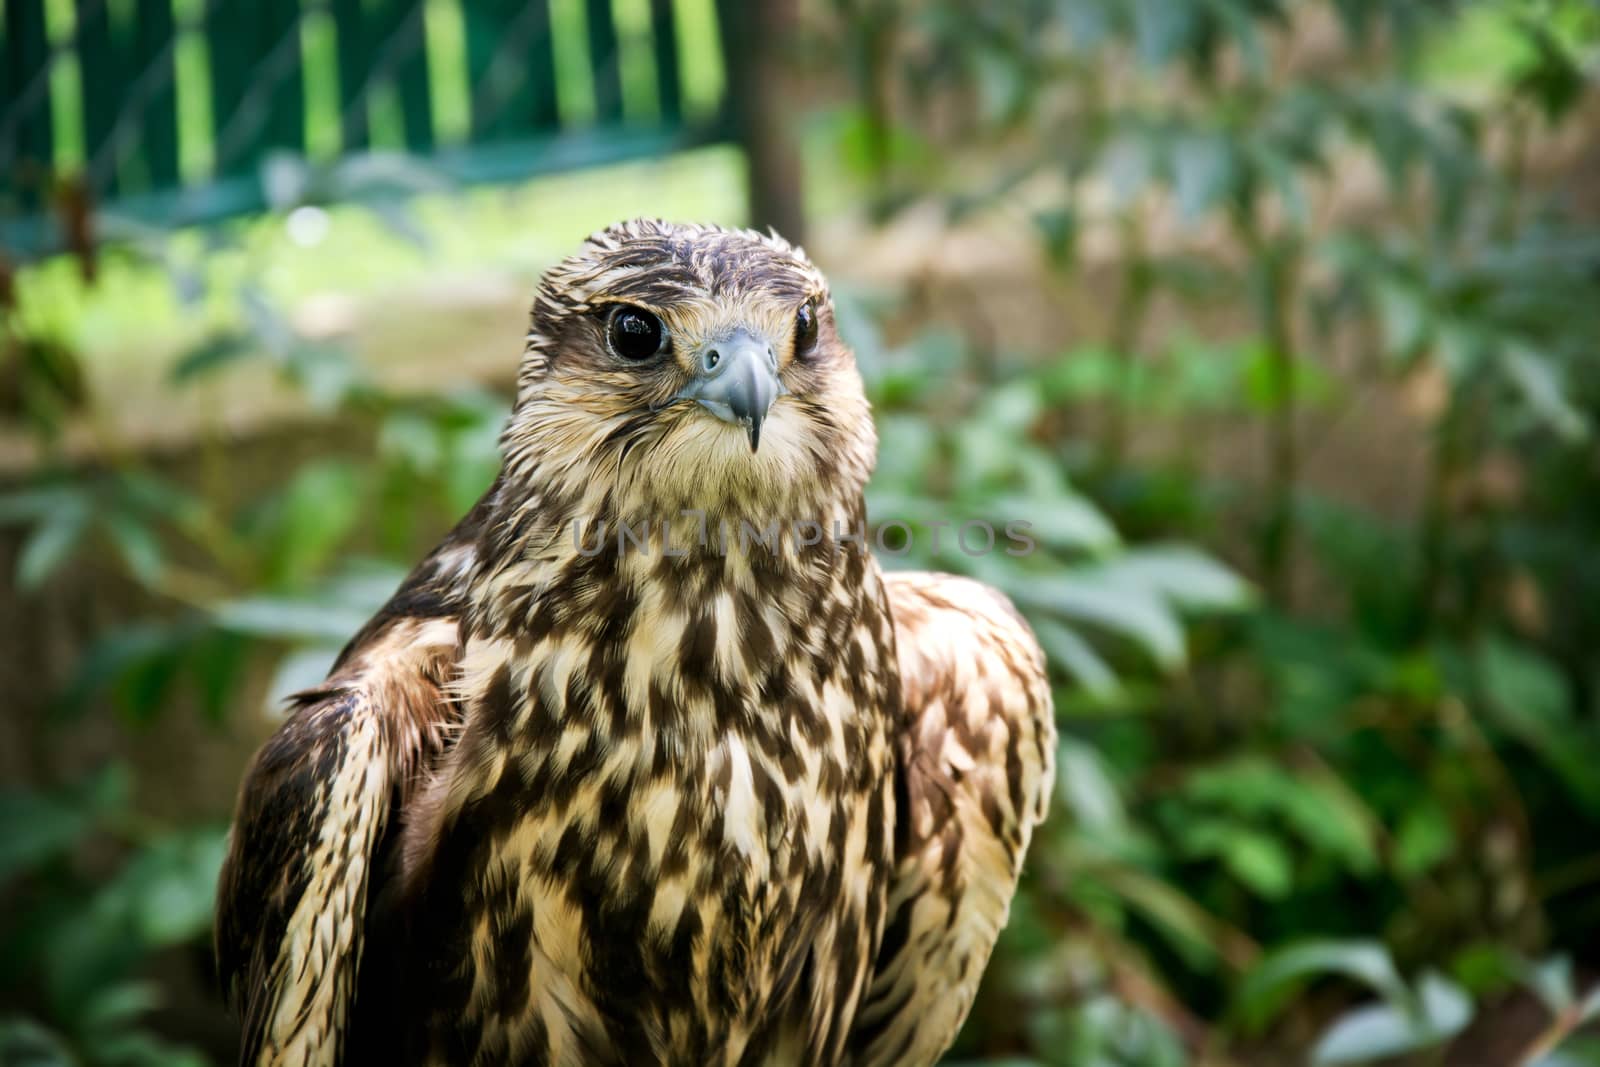 Falcon portrait close up. Birds of prey in nature.